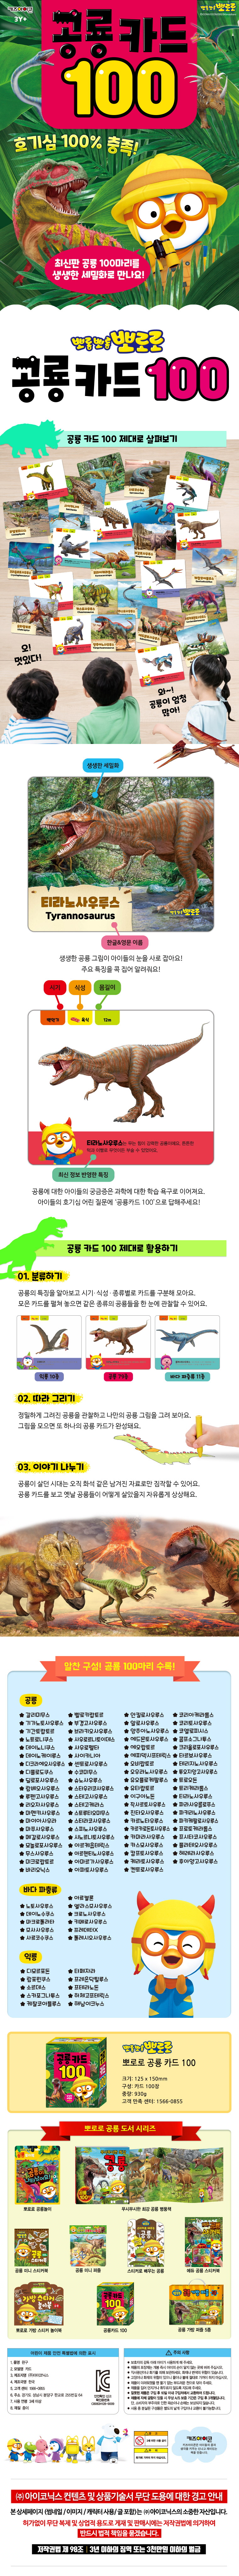 뽀롱뽀롱 뽀로로 공룡 카드 100 도서 상세이미지